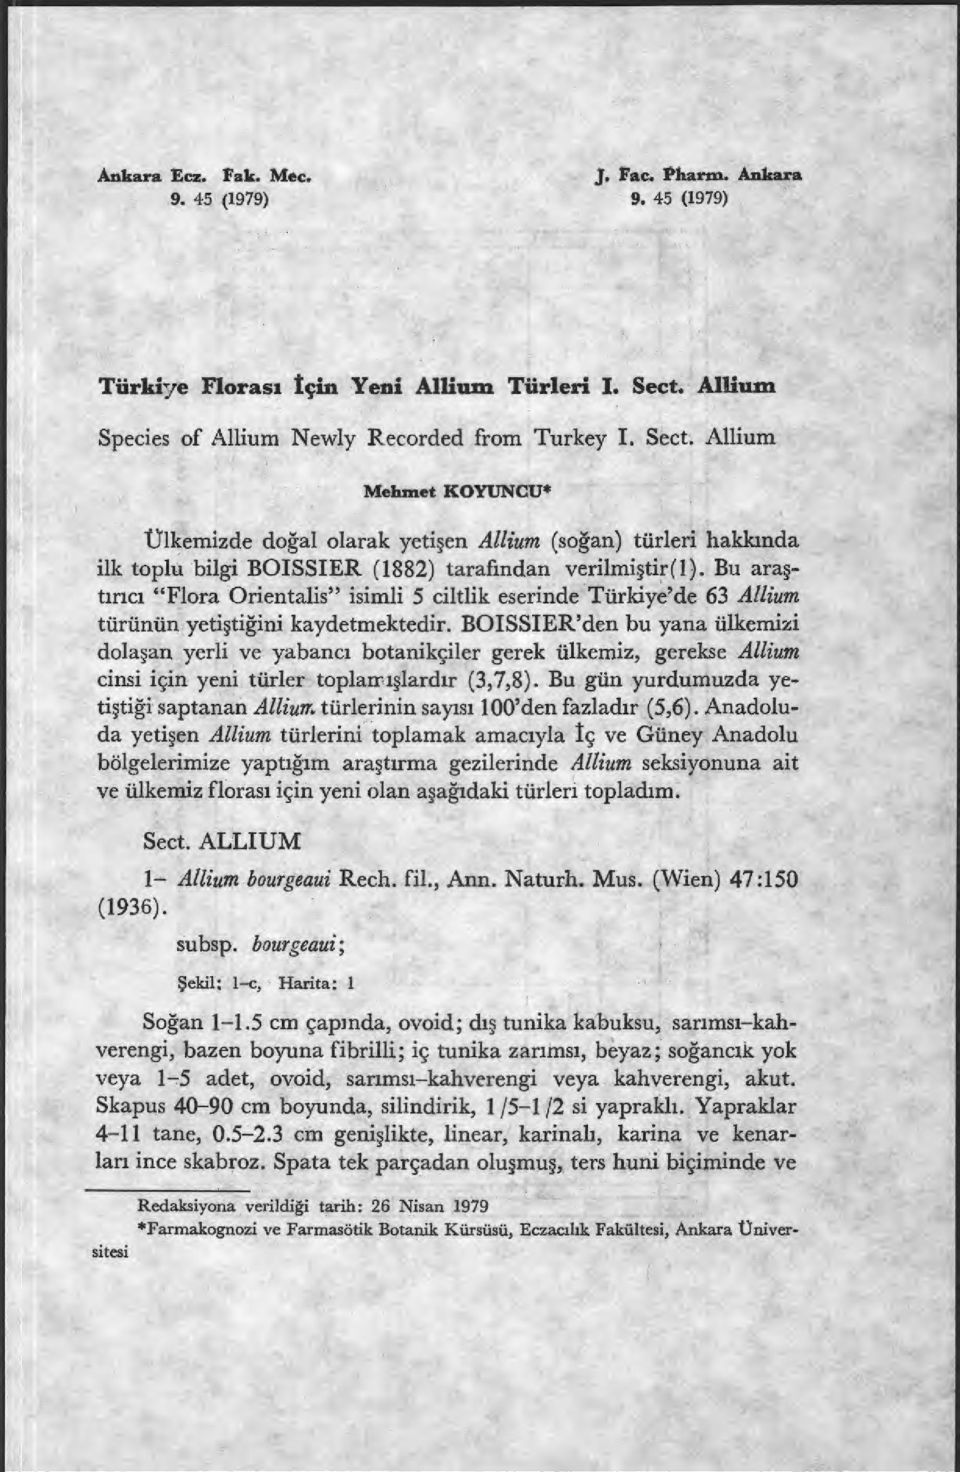 Allium Mehmet KOYUNCU* Ülkemizde do ğal olarak yeti şen Allium (soğan) türleri hakk ında ilk toplu bilgi BOISSIER (1882) tarafindan verilmi ştir (1).